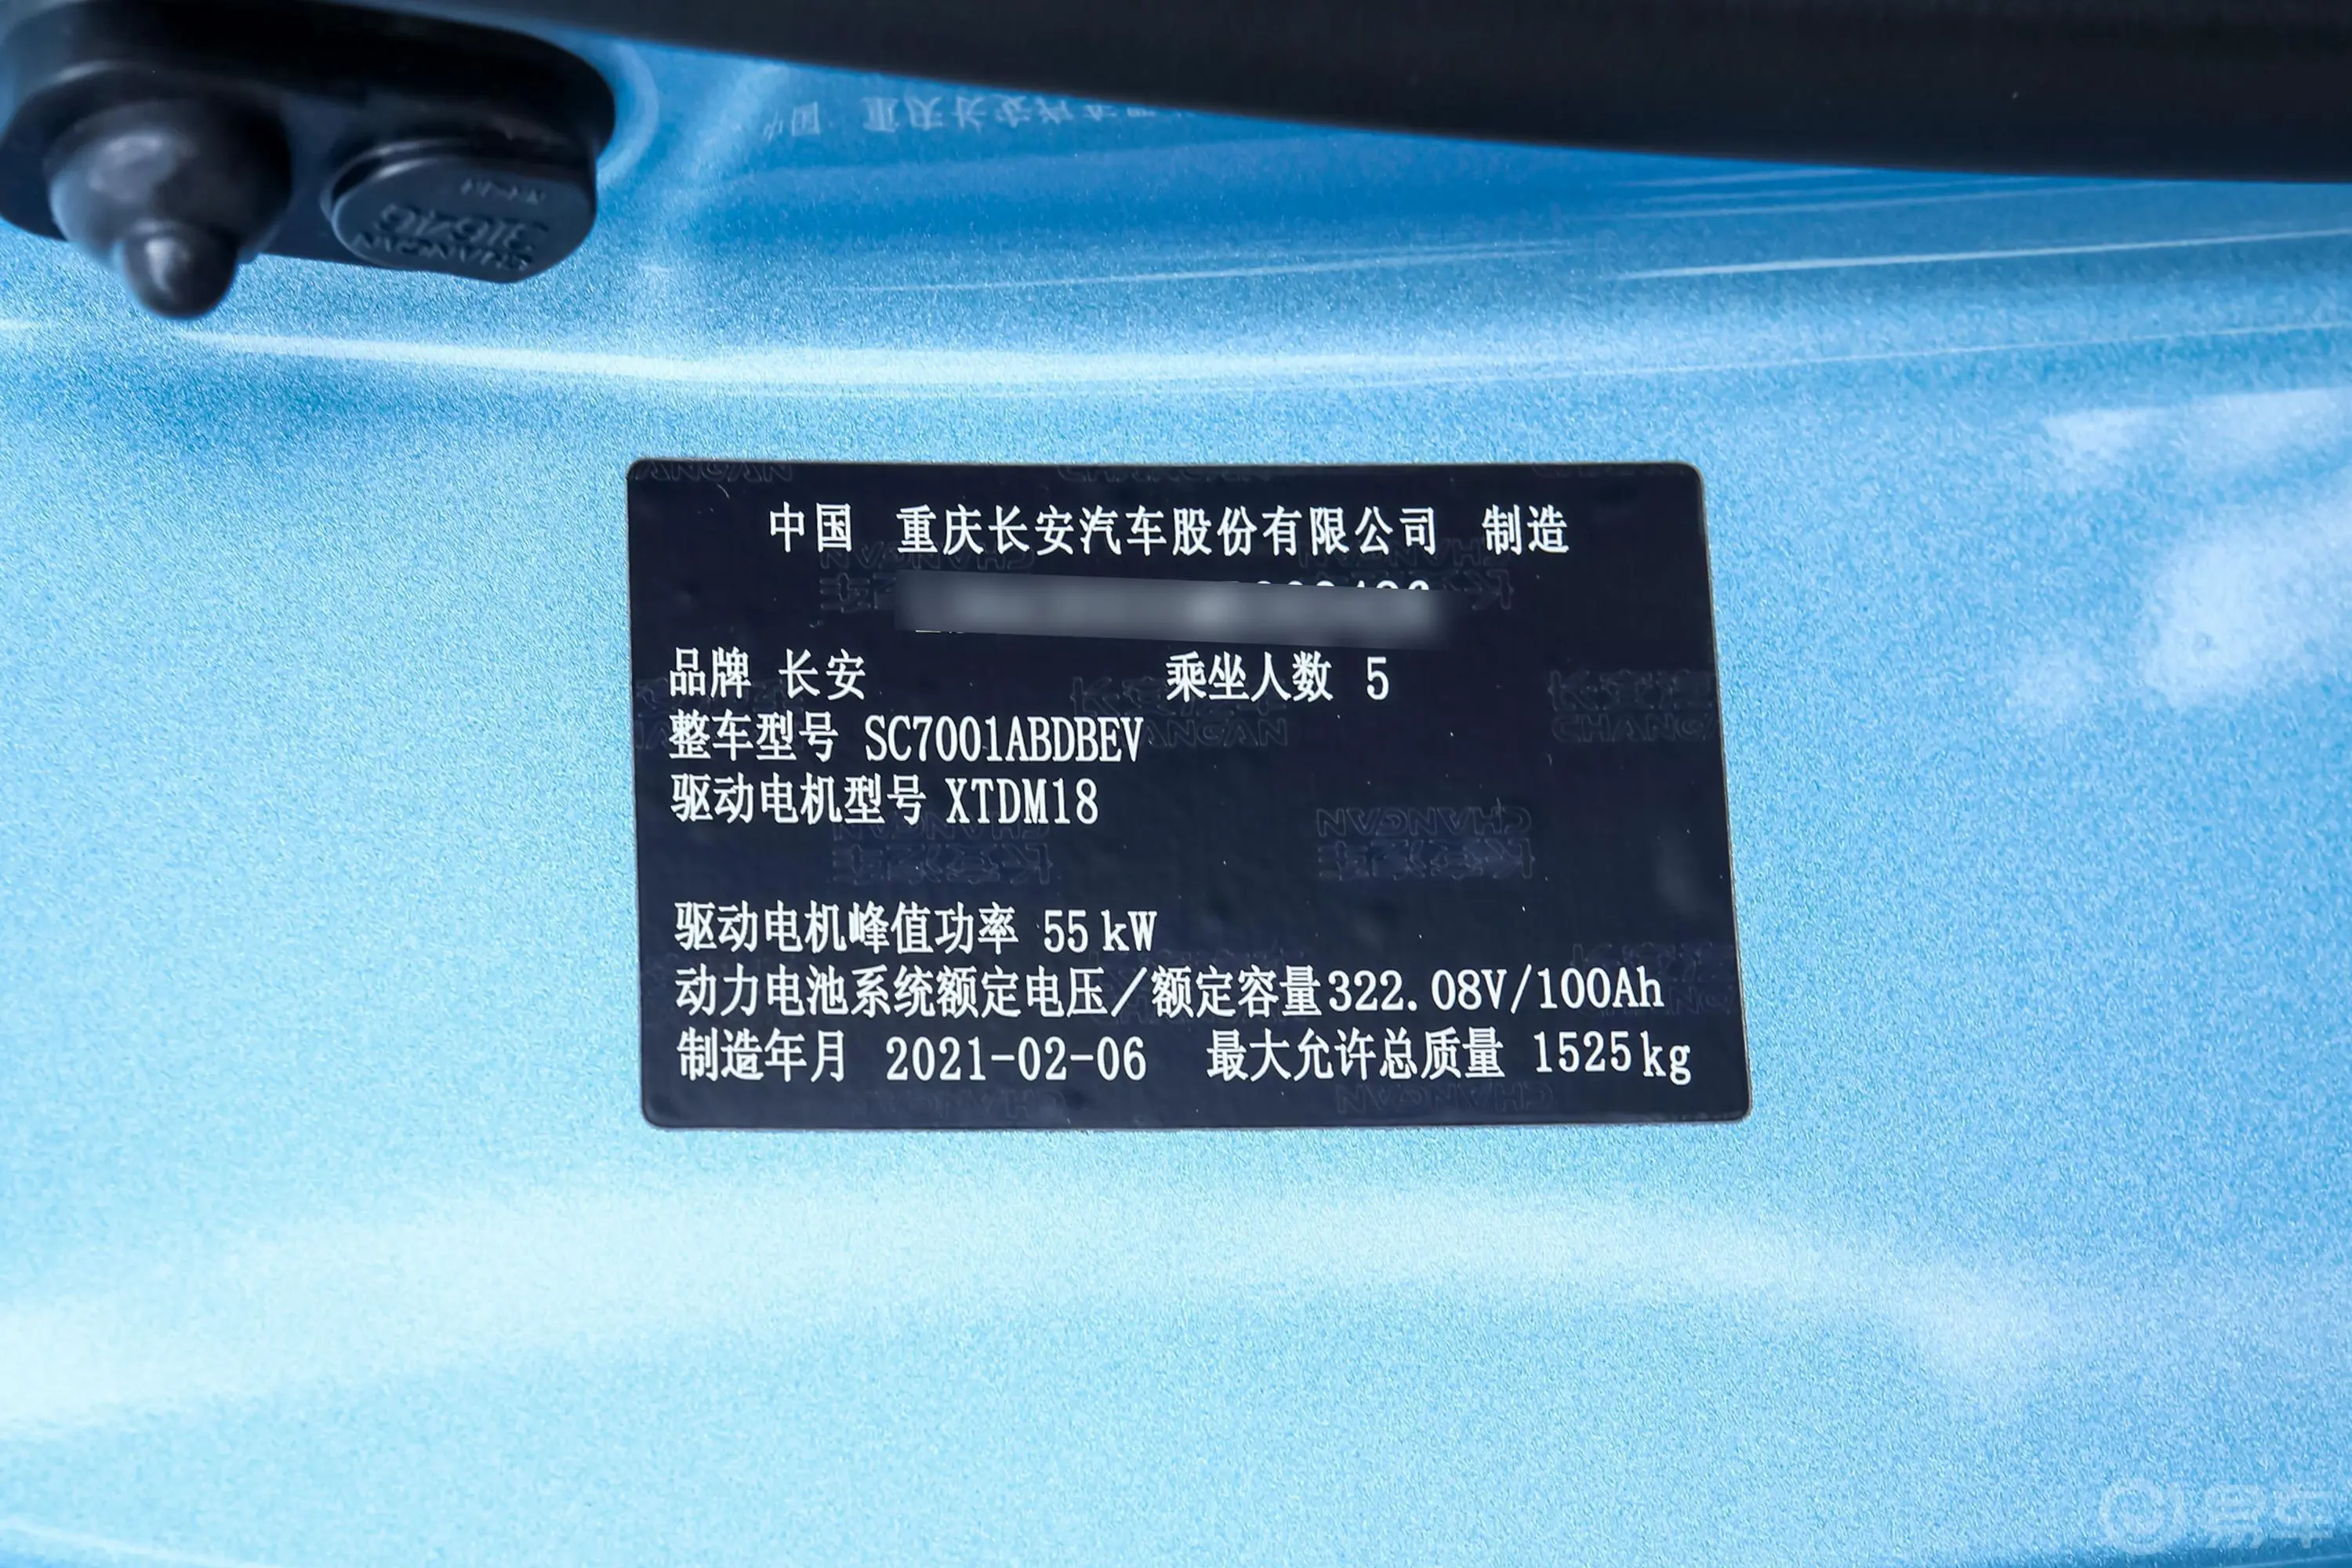 奔奔E-Star国民版 心悦版 磷酸铁锂 31.86kWh车辆信息铭牌